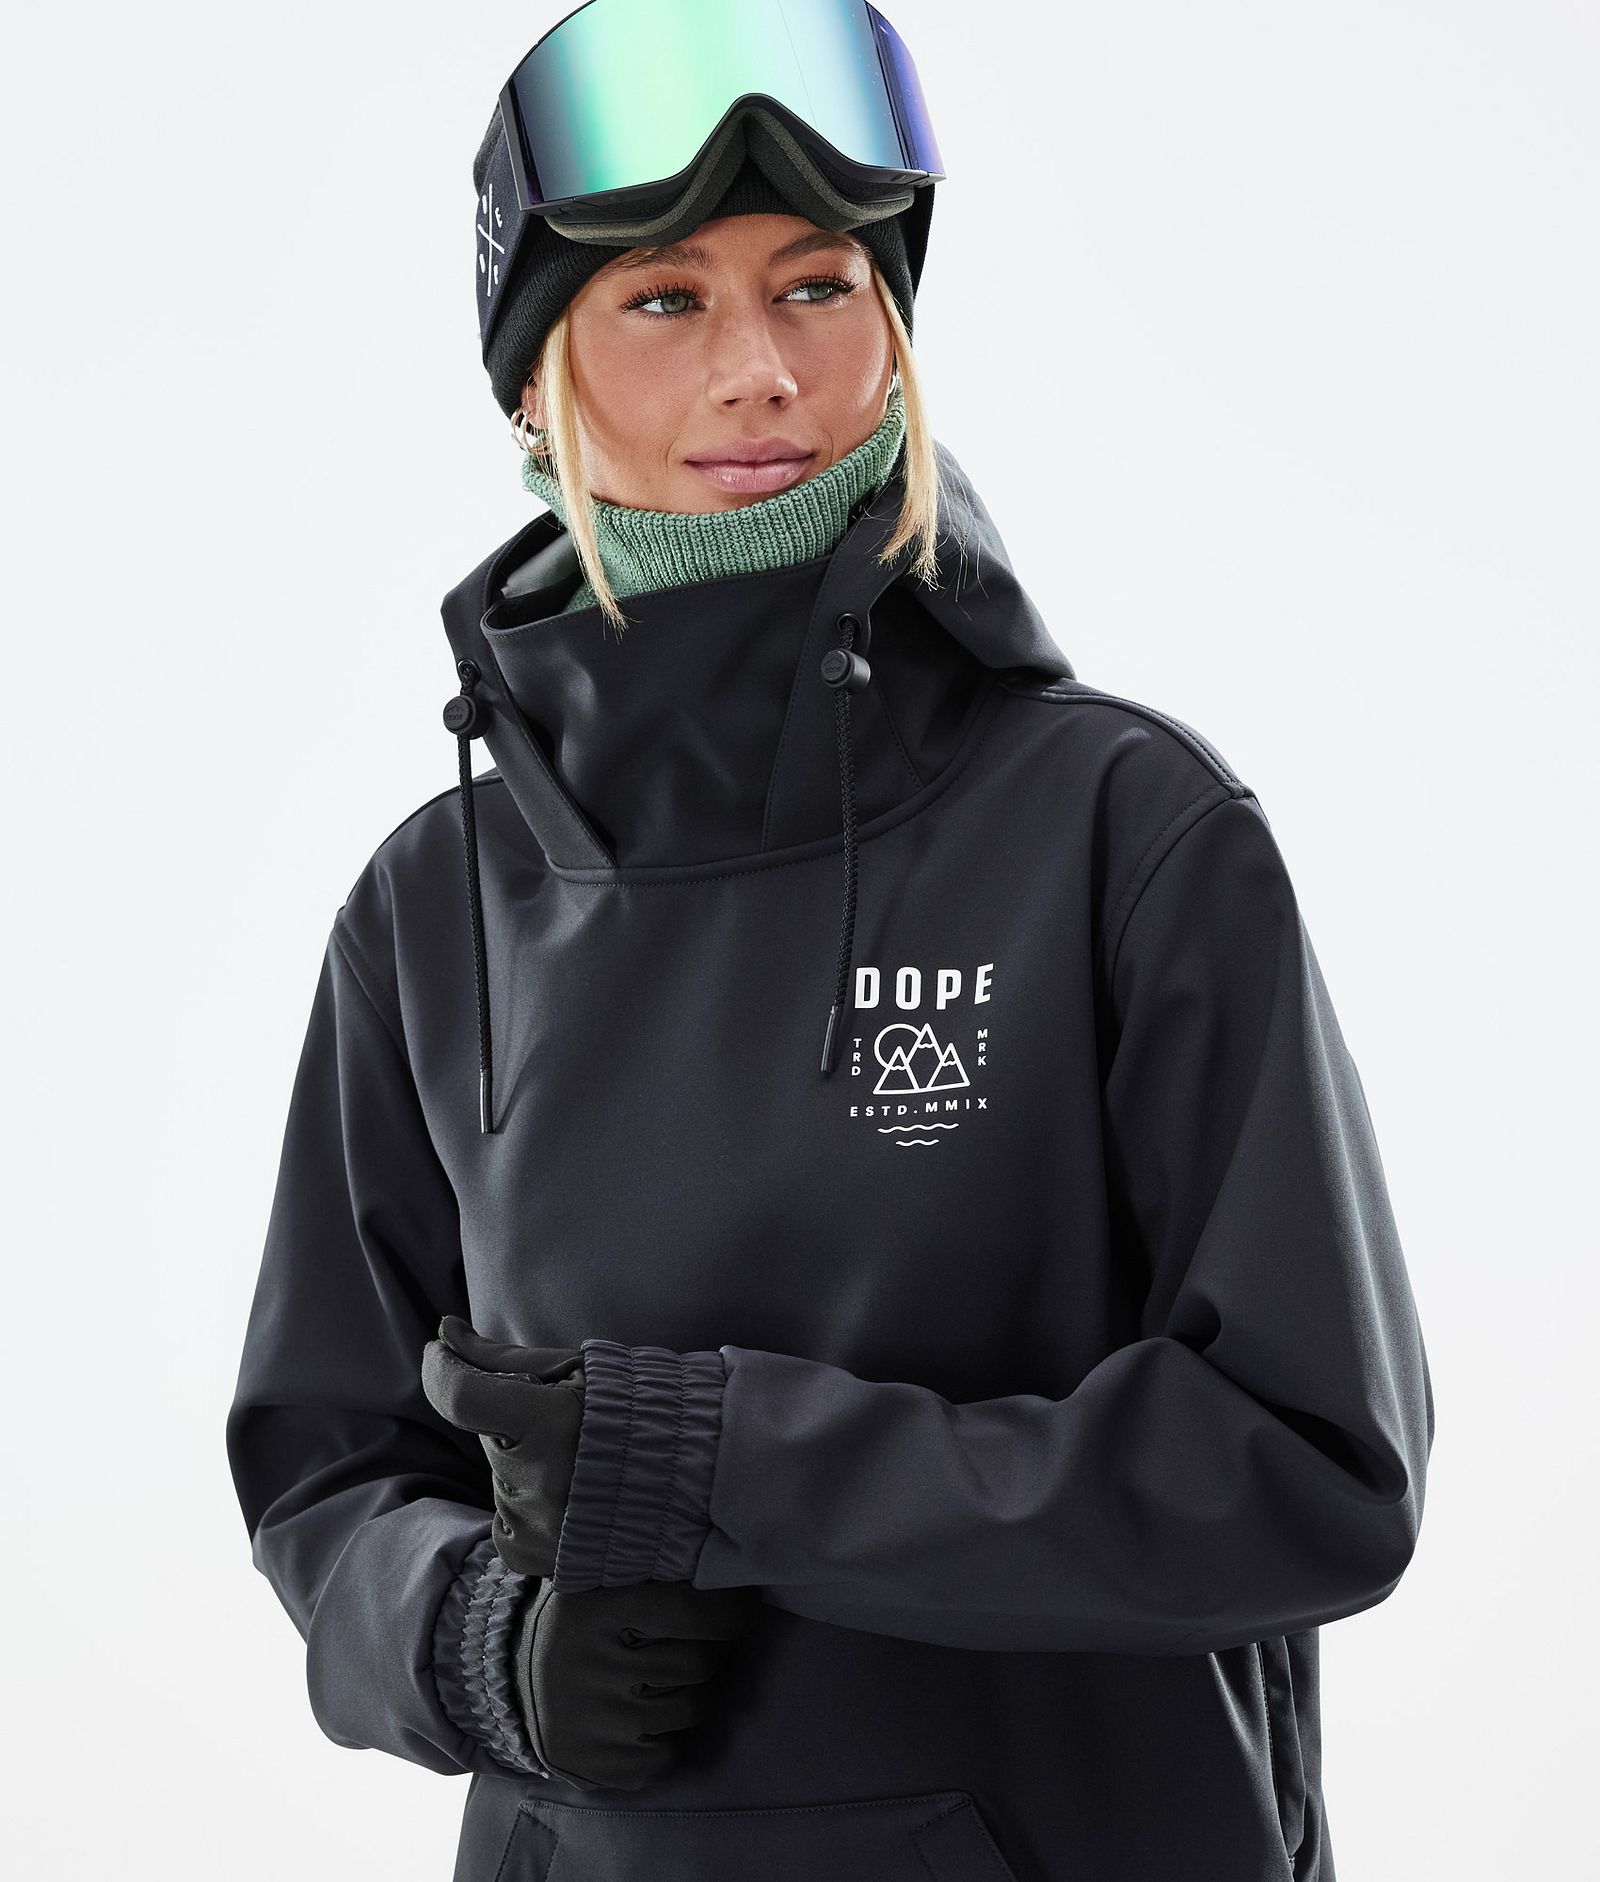 Dope Yeti W 2022 Chaqueta Esquí Mujer Summit Black